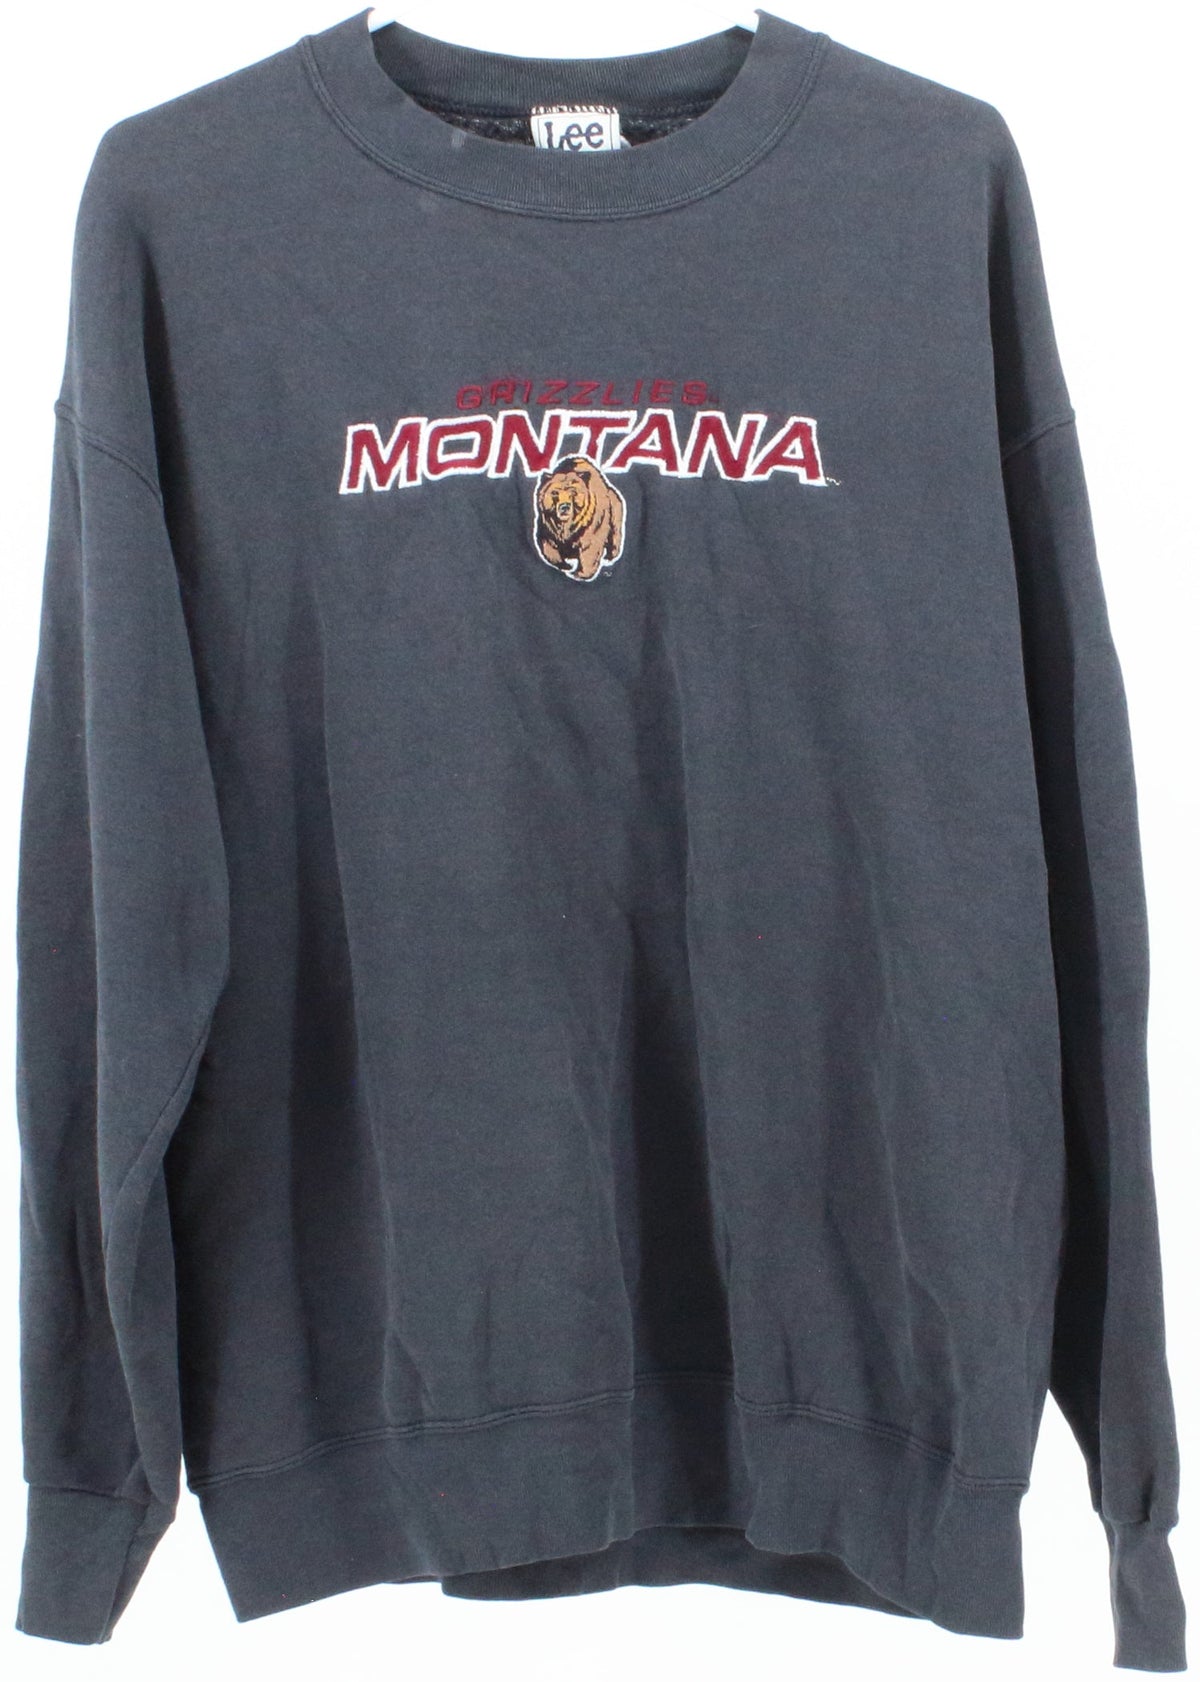 Lee Sport Grizzlies Montana Black Sweatshirt